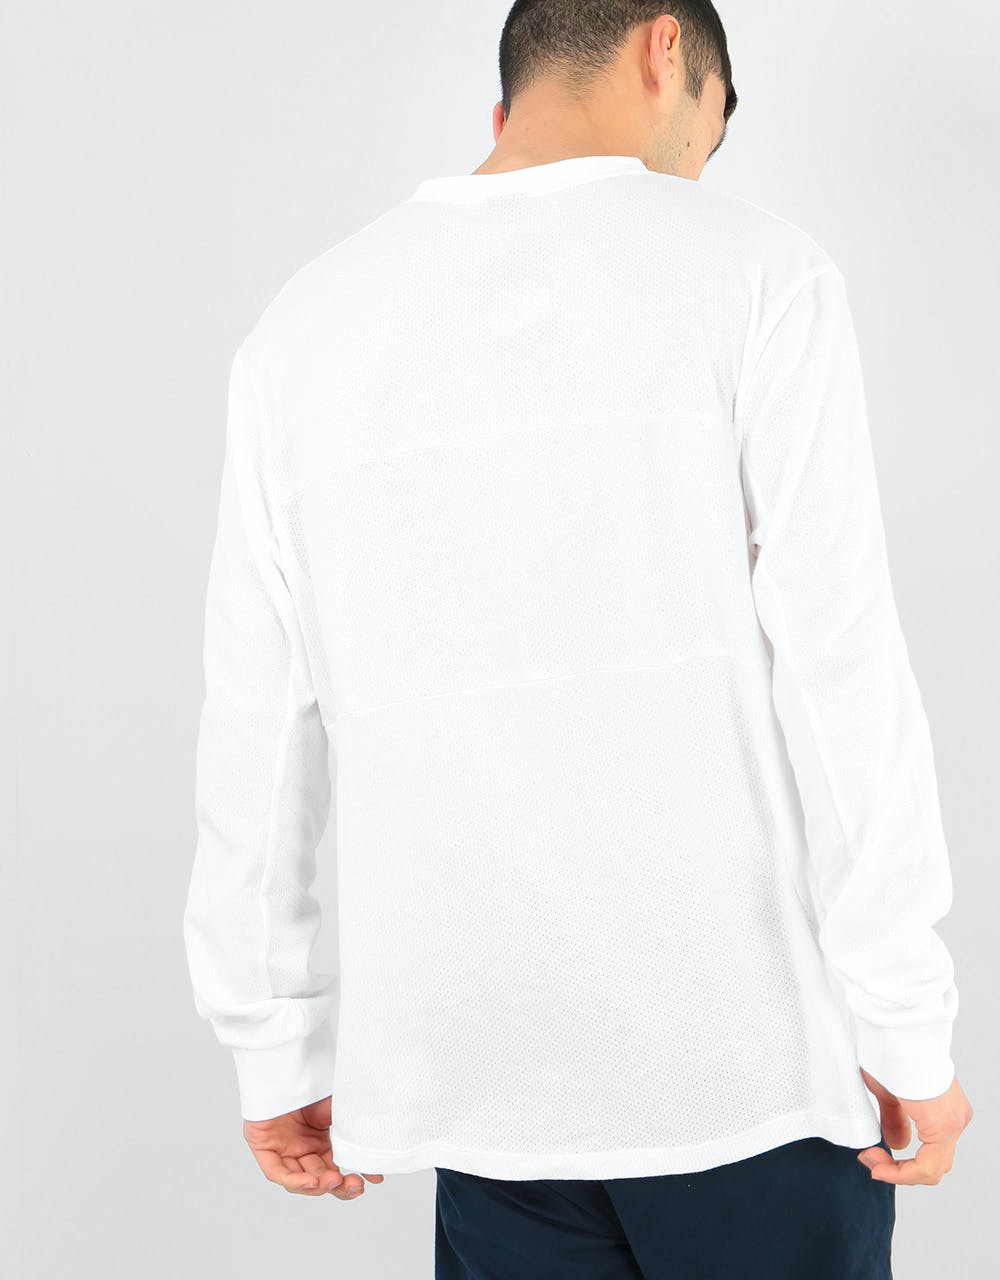 Nike SB Mesh Dri-Fit L/S T-Shirt - White/Photo Blue